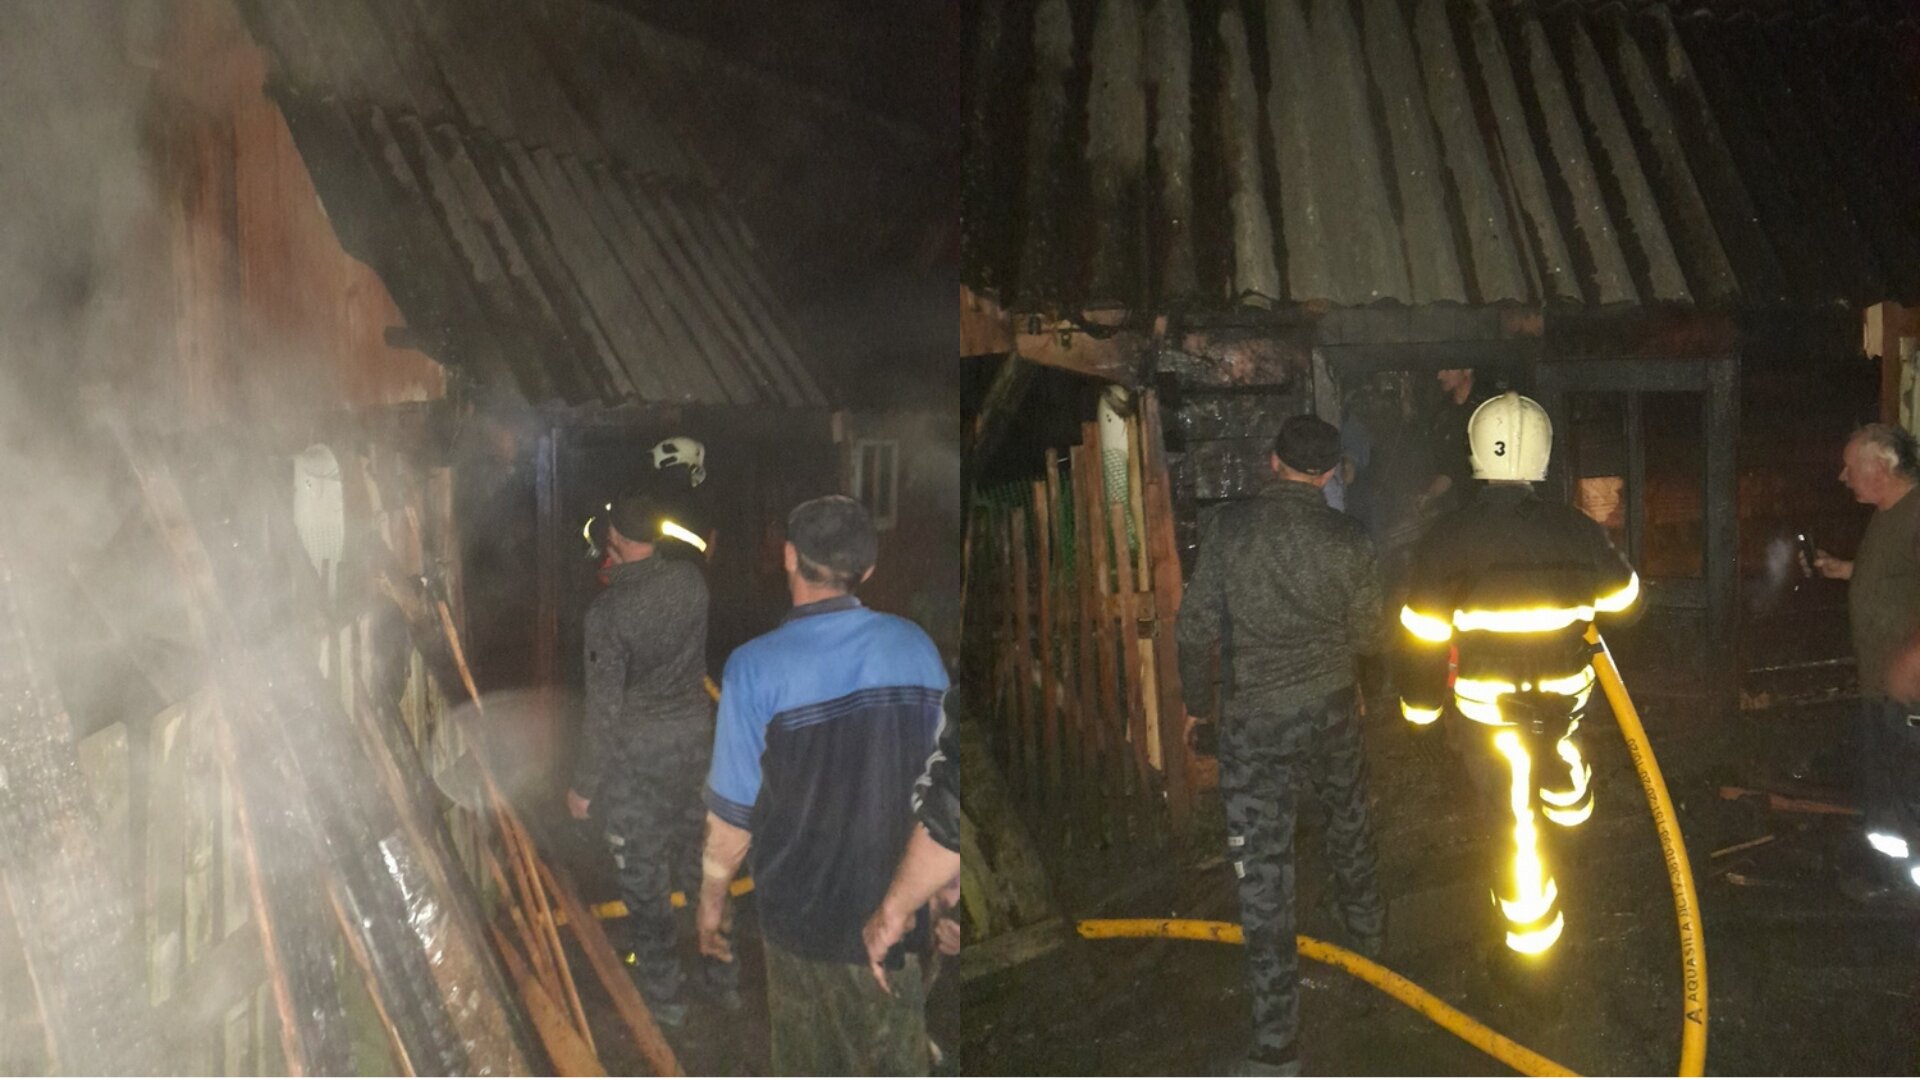 Вранці 30 вересня пожежа охопила одну з будівель на території приватного обійстя в с. Синевир Хустського району. 